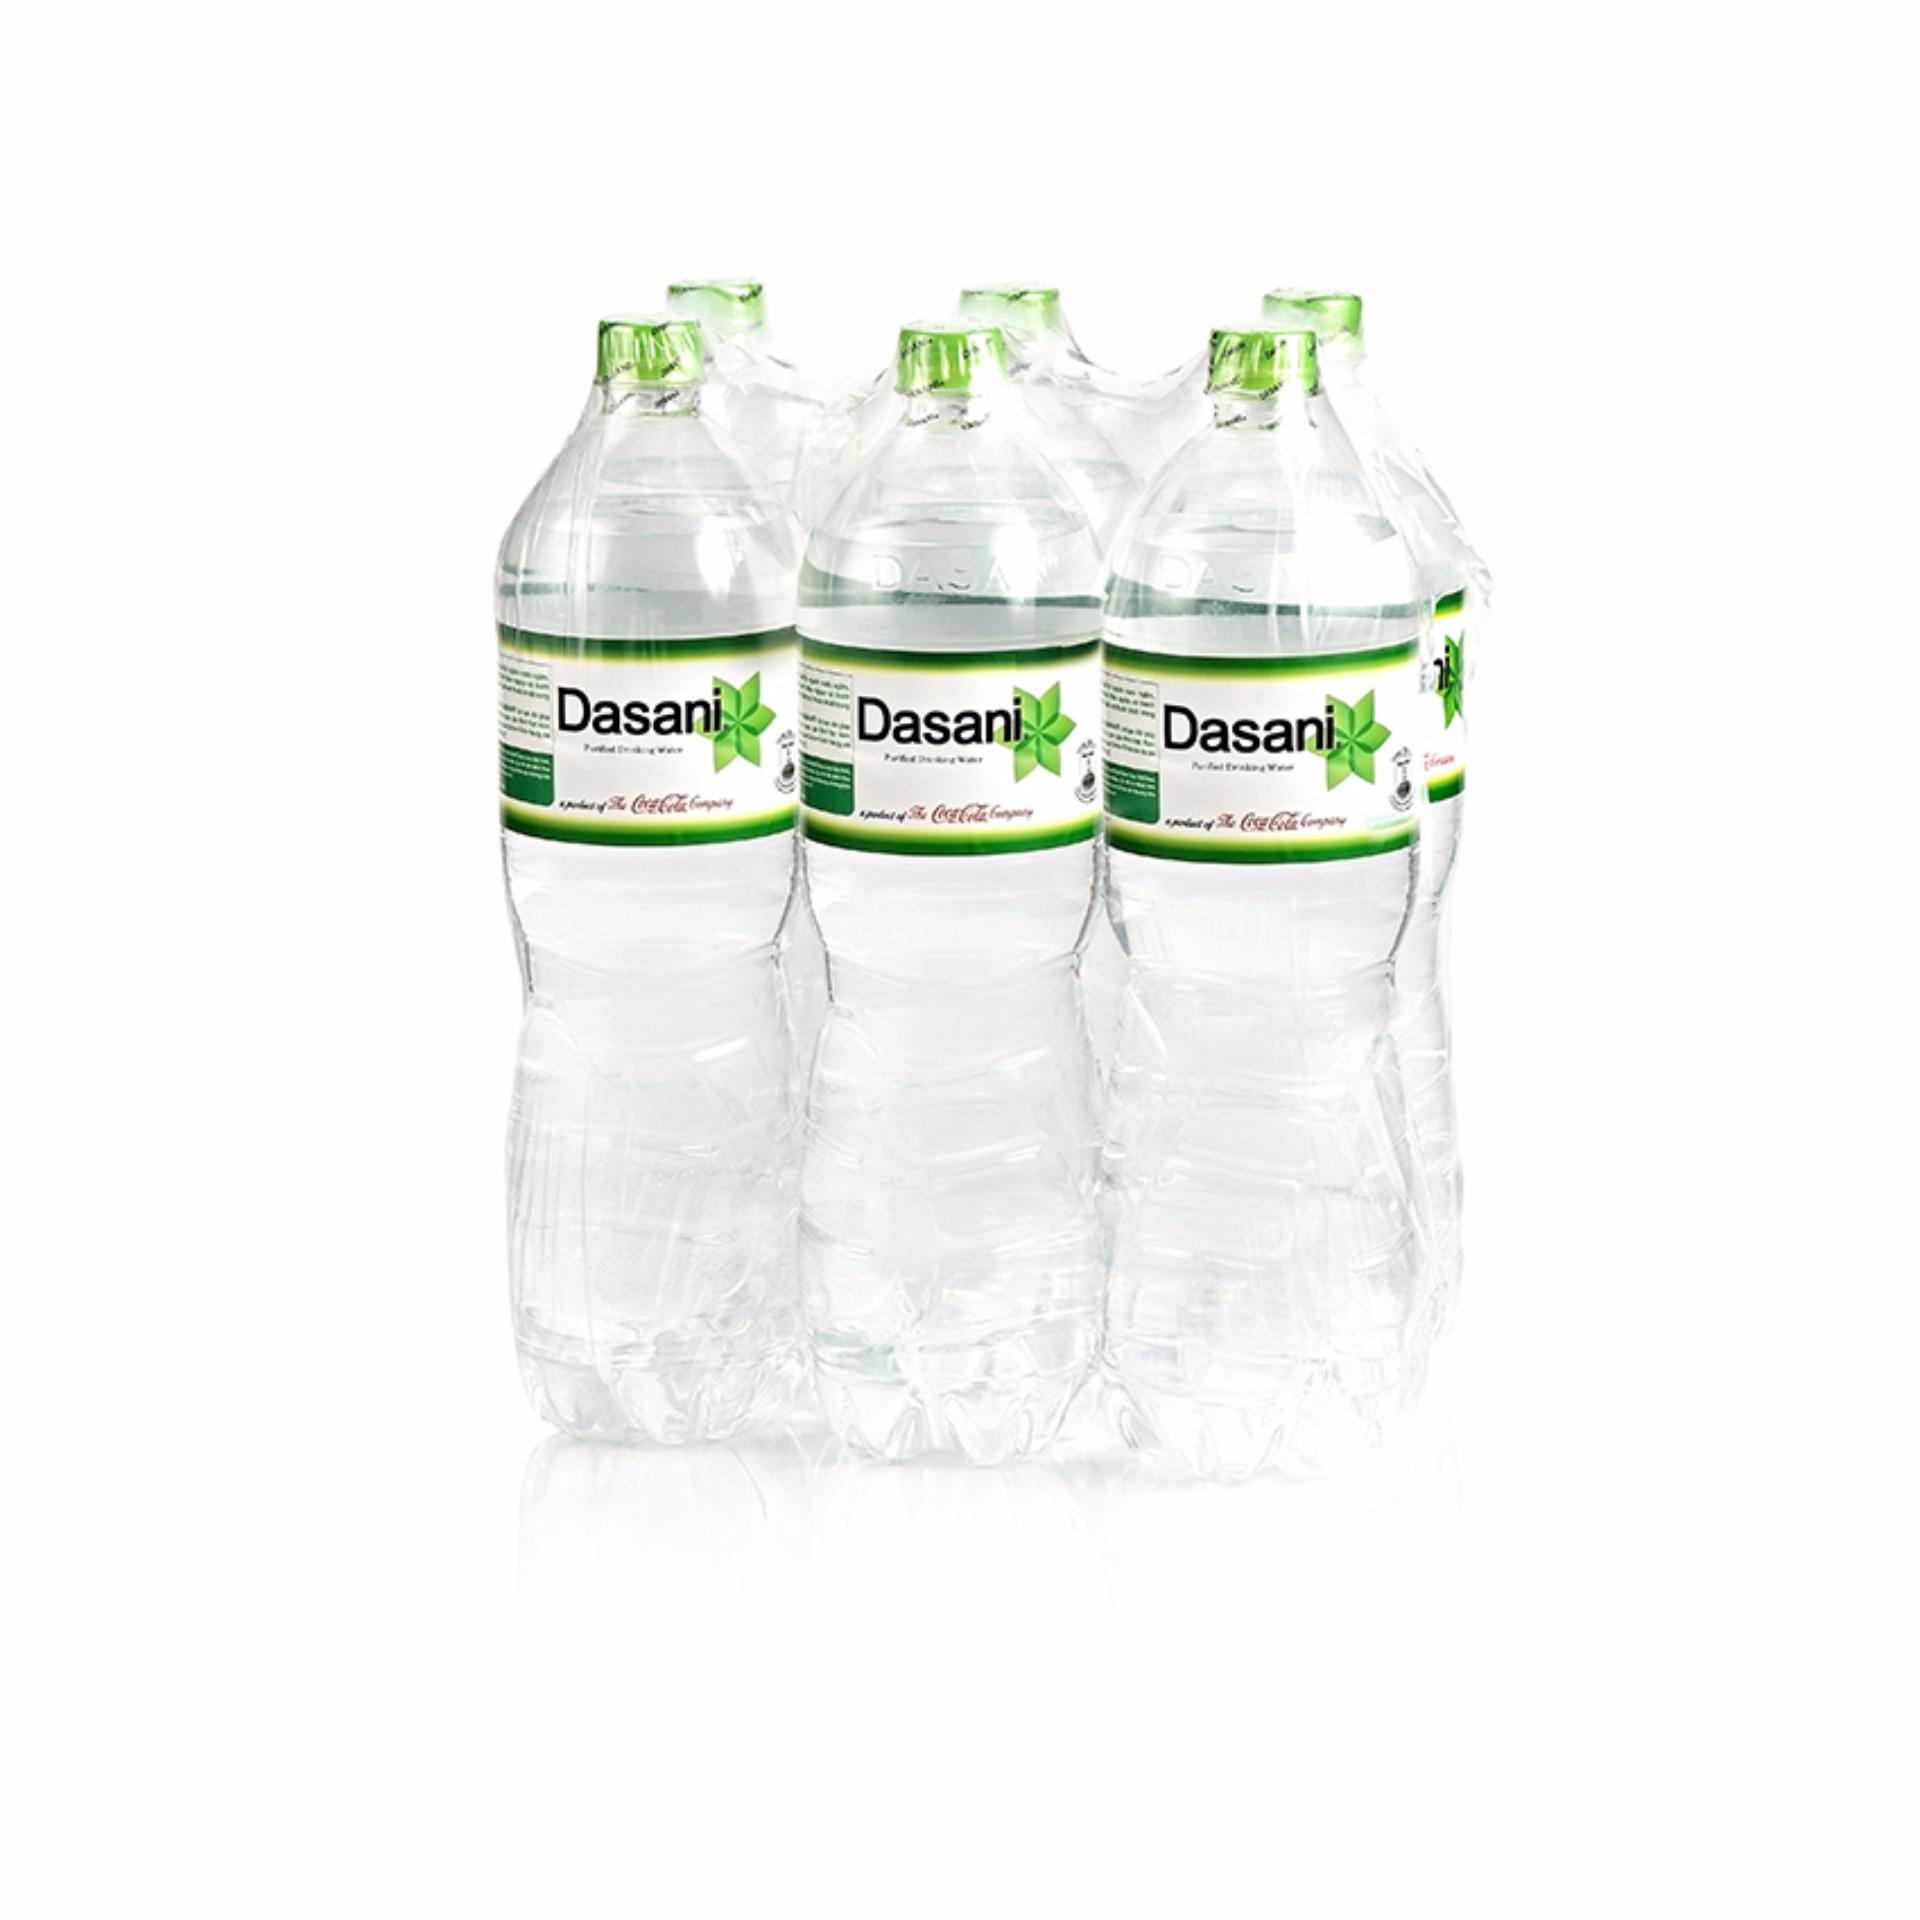 [ Family Size] Nước suối Dasani lốc 6 chai 1.5L